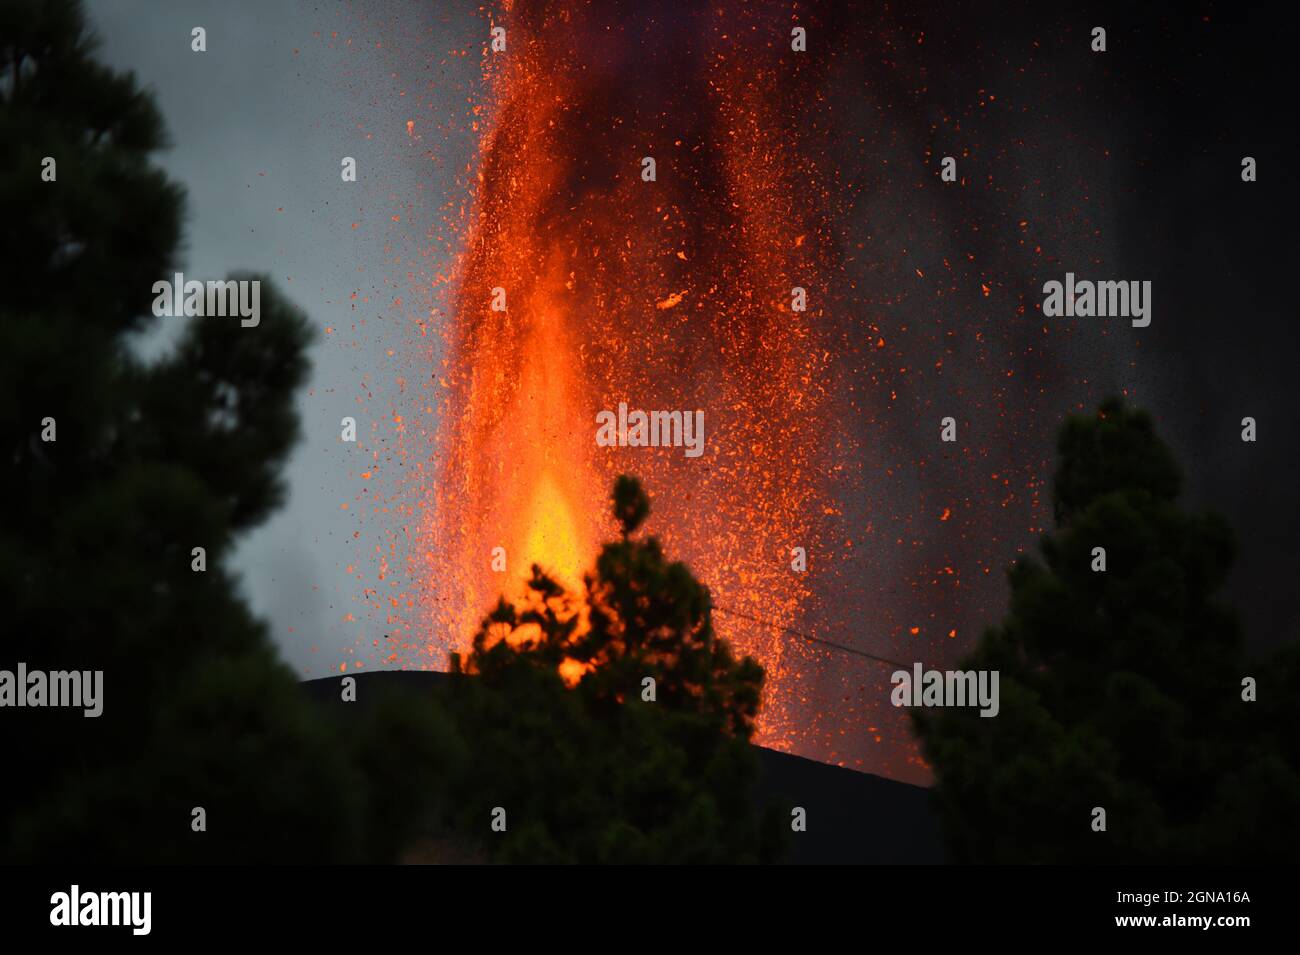 (210924) -- LA PALMA, 24 settembre 2021 (Xinhua) -- Foto scattata il 22 settembre 2021, mostra la scena dell'eruzione vulcanica del vulcano Cumbre Vieja a la Palma, Spagna. Mercoledì, l'Istituto Vulcanologico delle Isole Canarie (INVOLCAN) ha stimato che l'eruzione potrebbe durare 24-84 giorni. Il vulcano emette attualmente tra le 6,140 e le 11,500 tonnellate di anidride solforosa (SO2) al giorno. Anche se sei strade sull'isola sono state chiuse a causa dell'eruzione, l'aeroporto di la Palma rimane aperto con 48 voli in programma per giovedì. Tuttavia, la compagnia aerea Tui ha annullato tutti i suoi voli per l'isola. Foto Stock